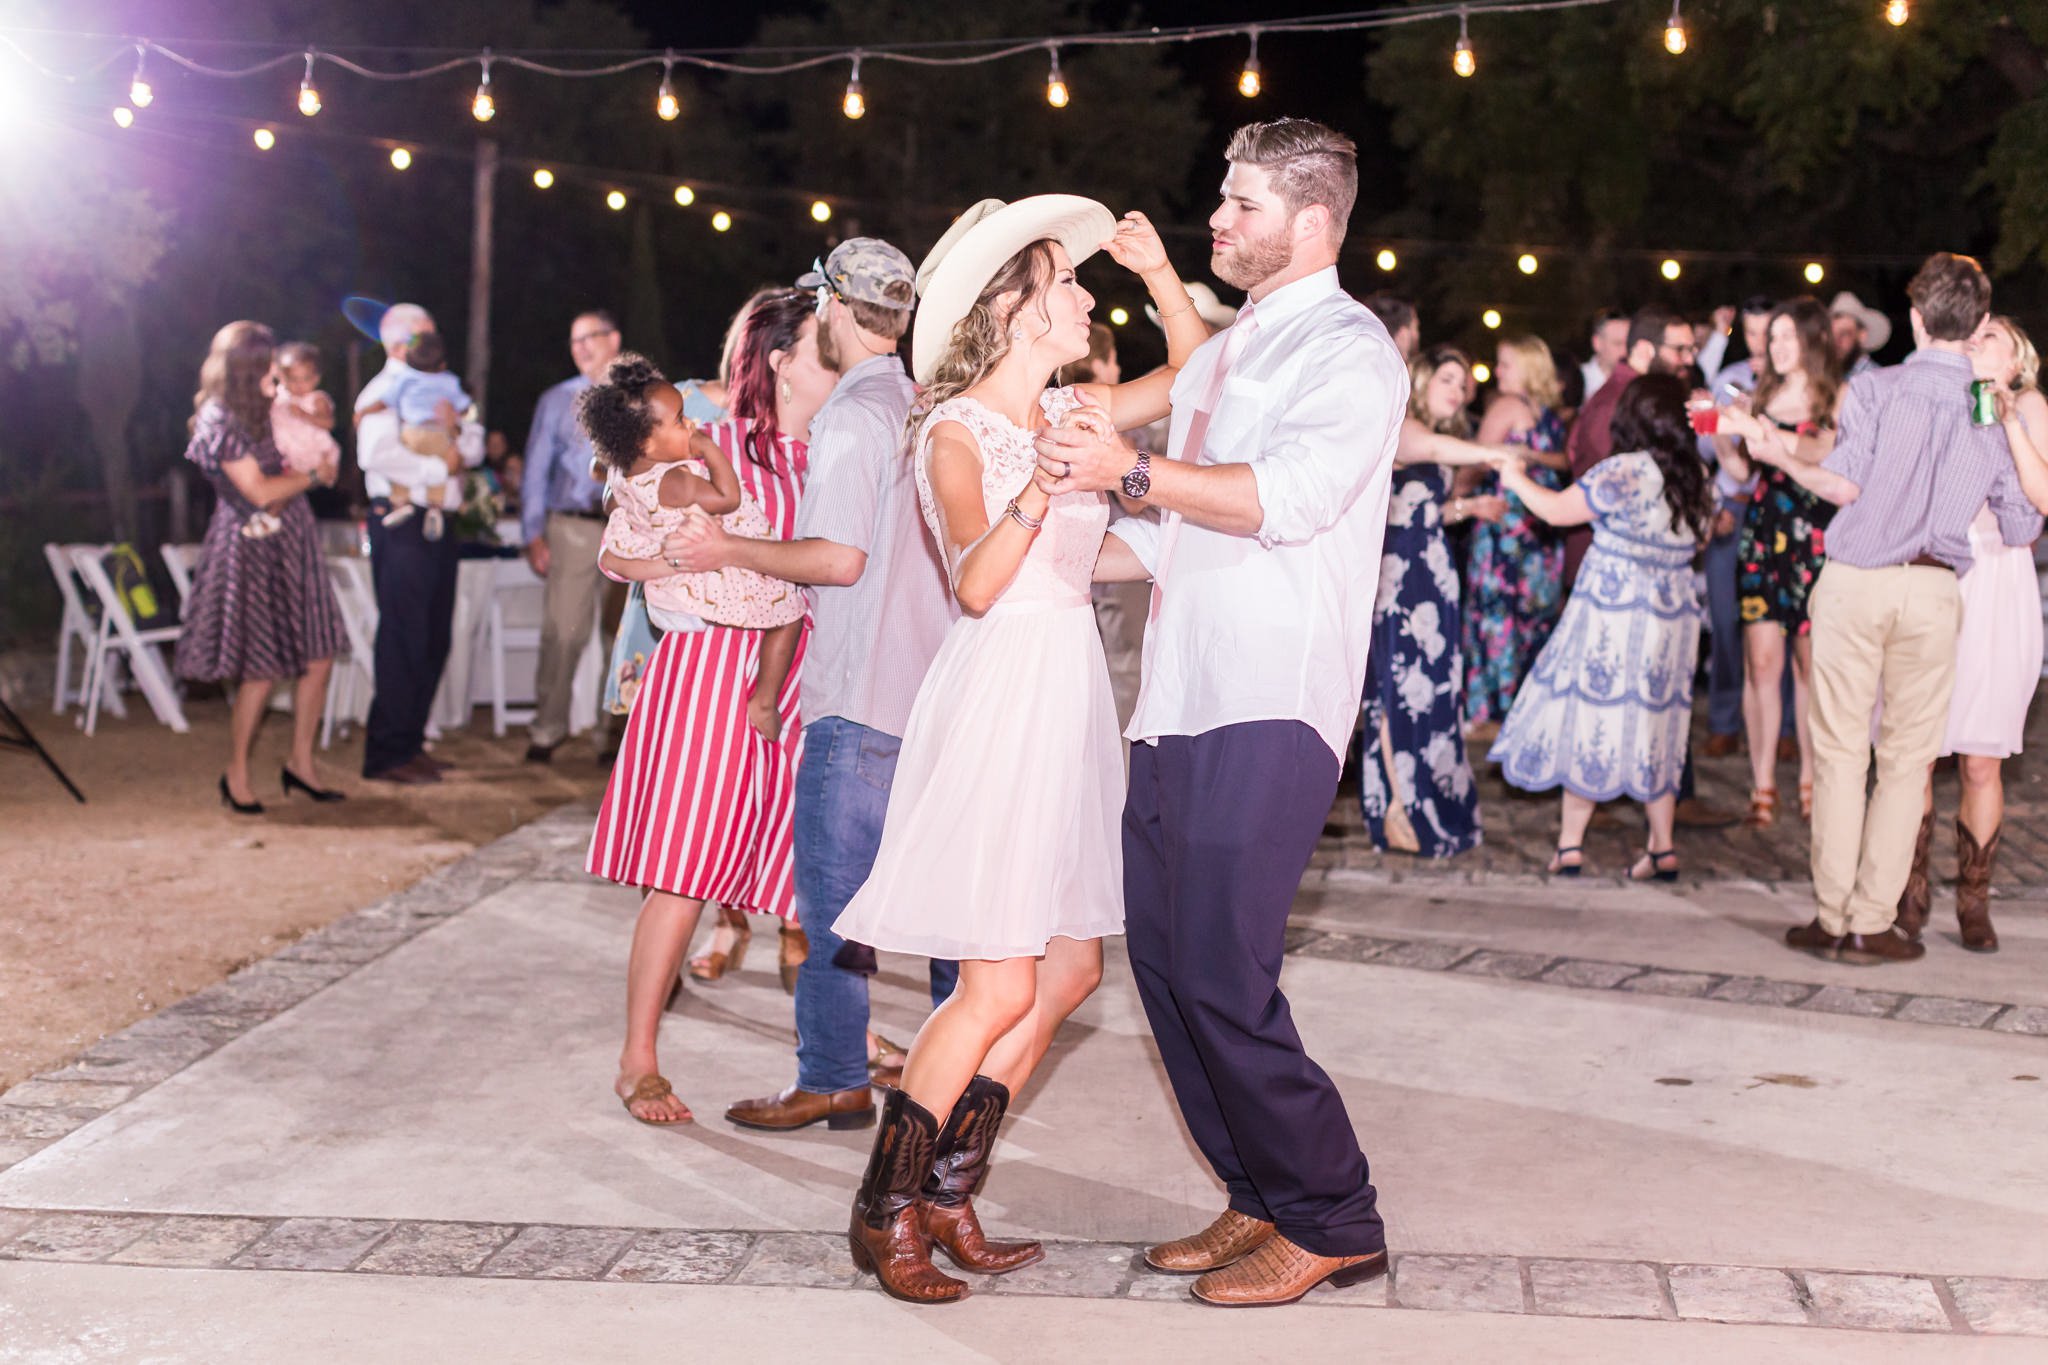 A Rustic & Blush Wedding at River Rock Event Center in Boerne, TX by Dawn Elizabeth Studios, San Antonio Wedding Photographer, Boerne Wedding Photographer